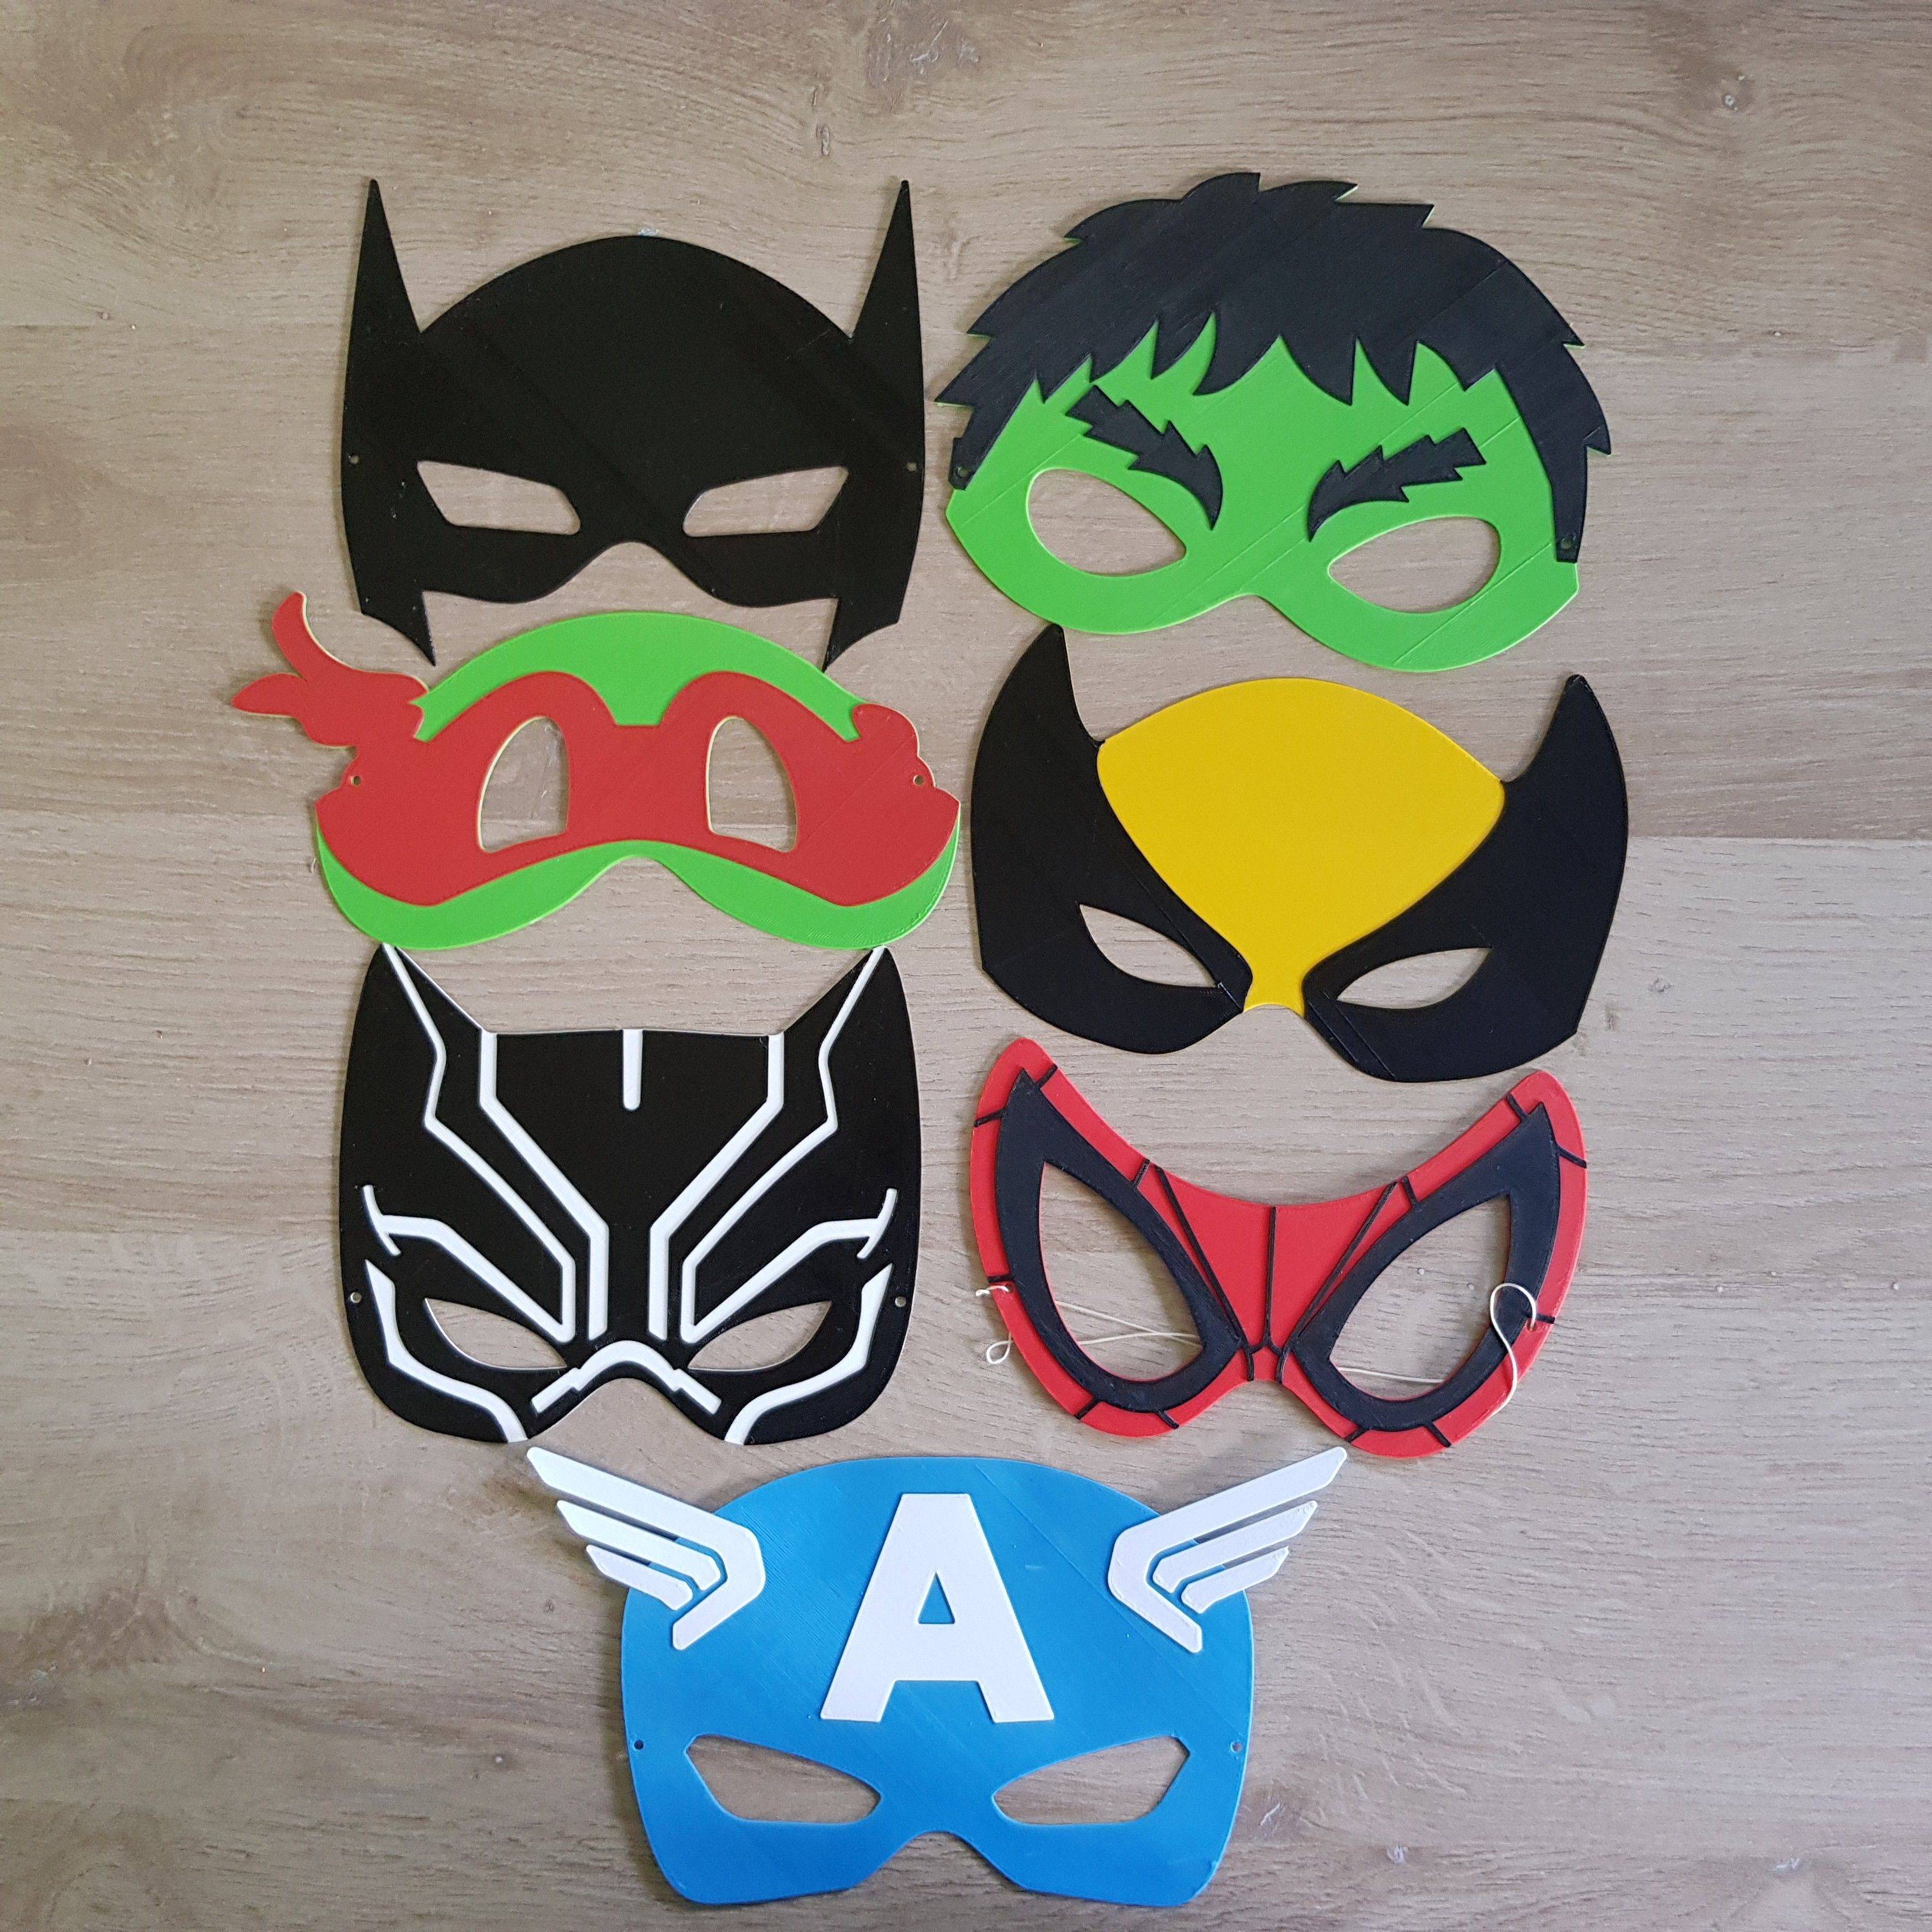 20180530_110105.jpg Download STL file Superhero masks (PROMO) • 3D print template, woody3d974